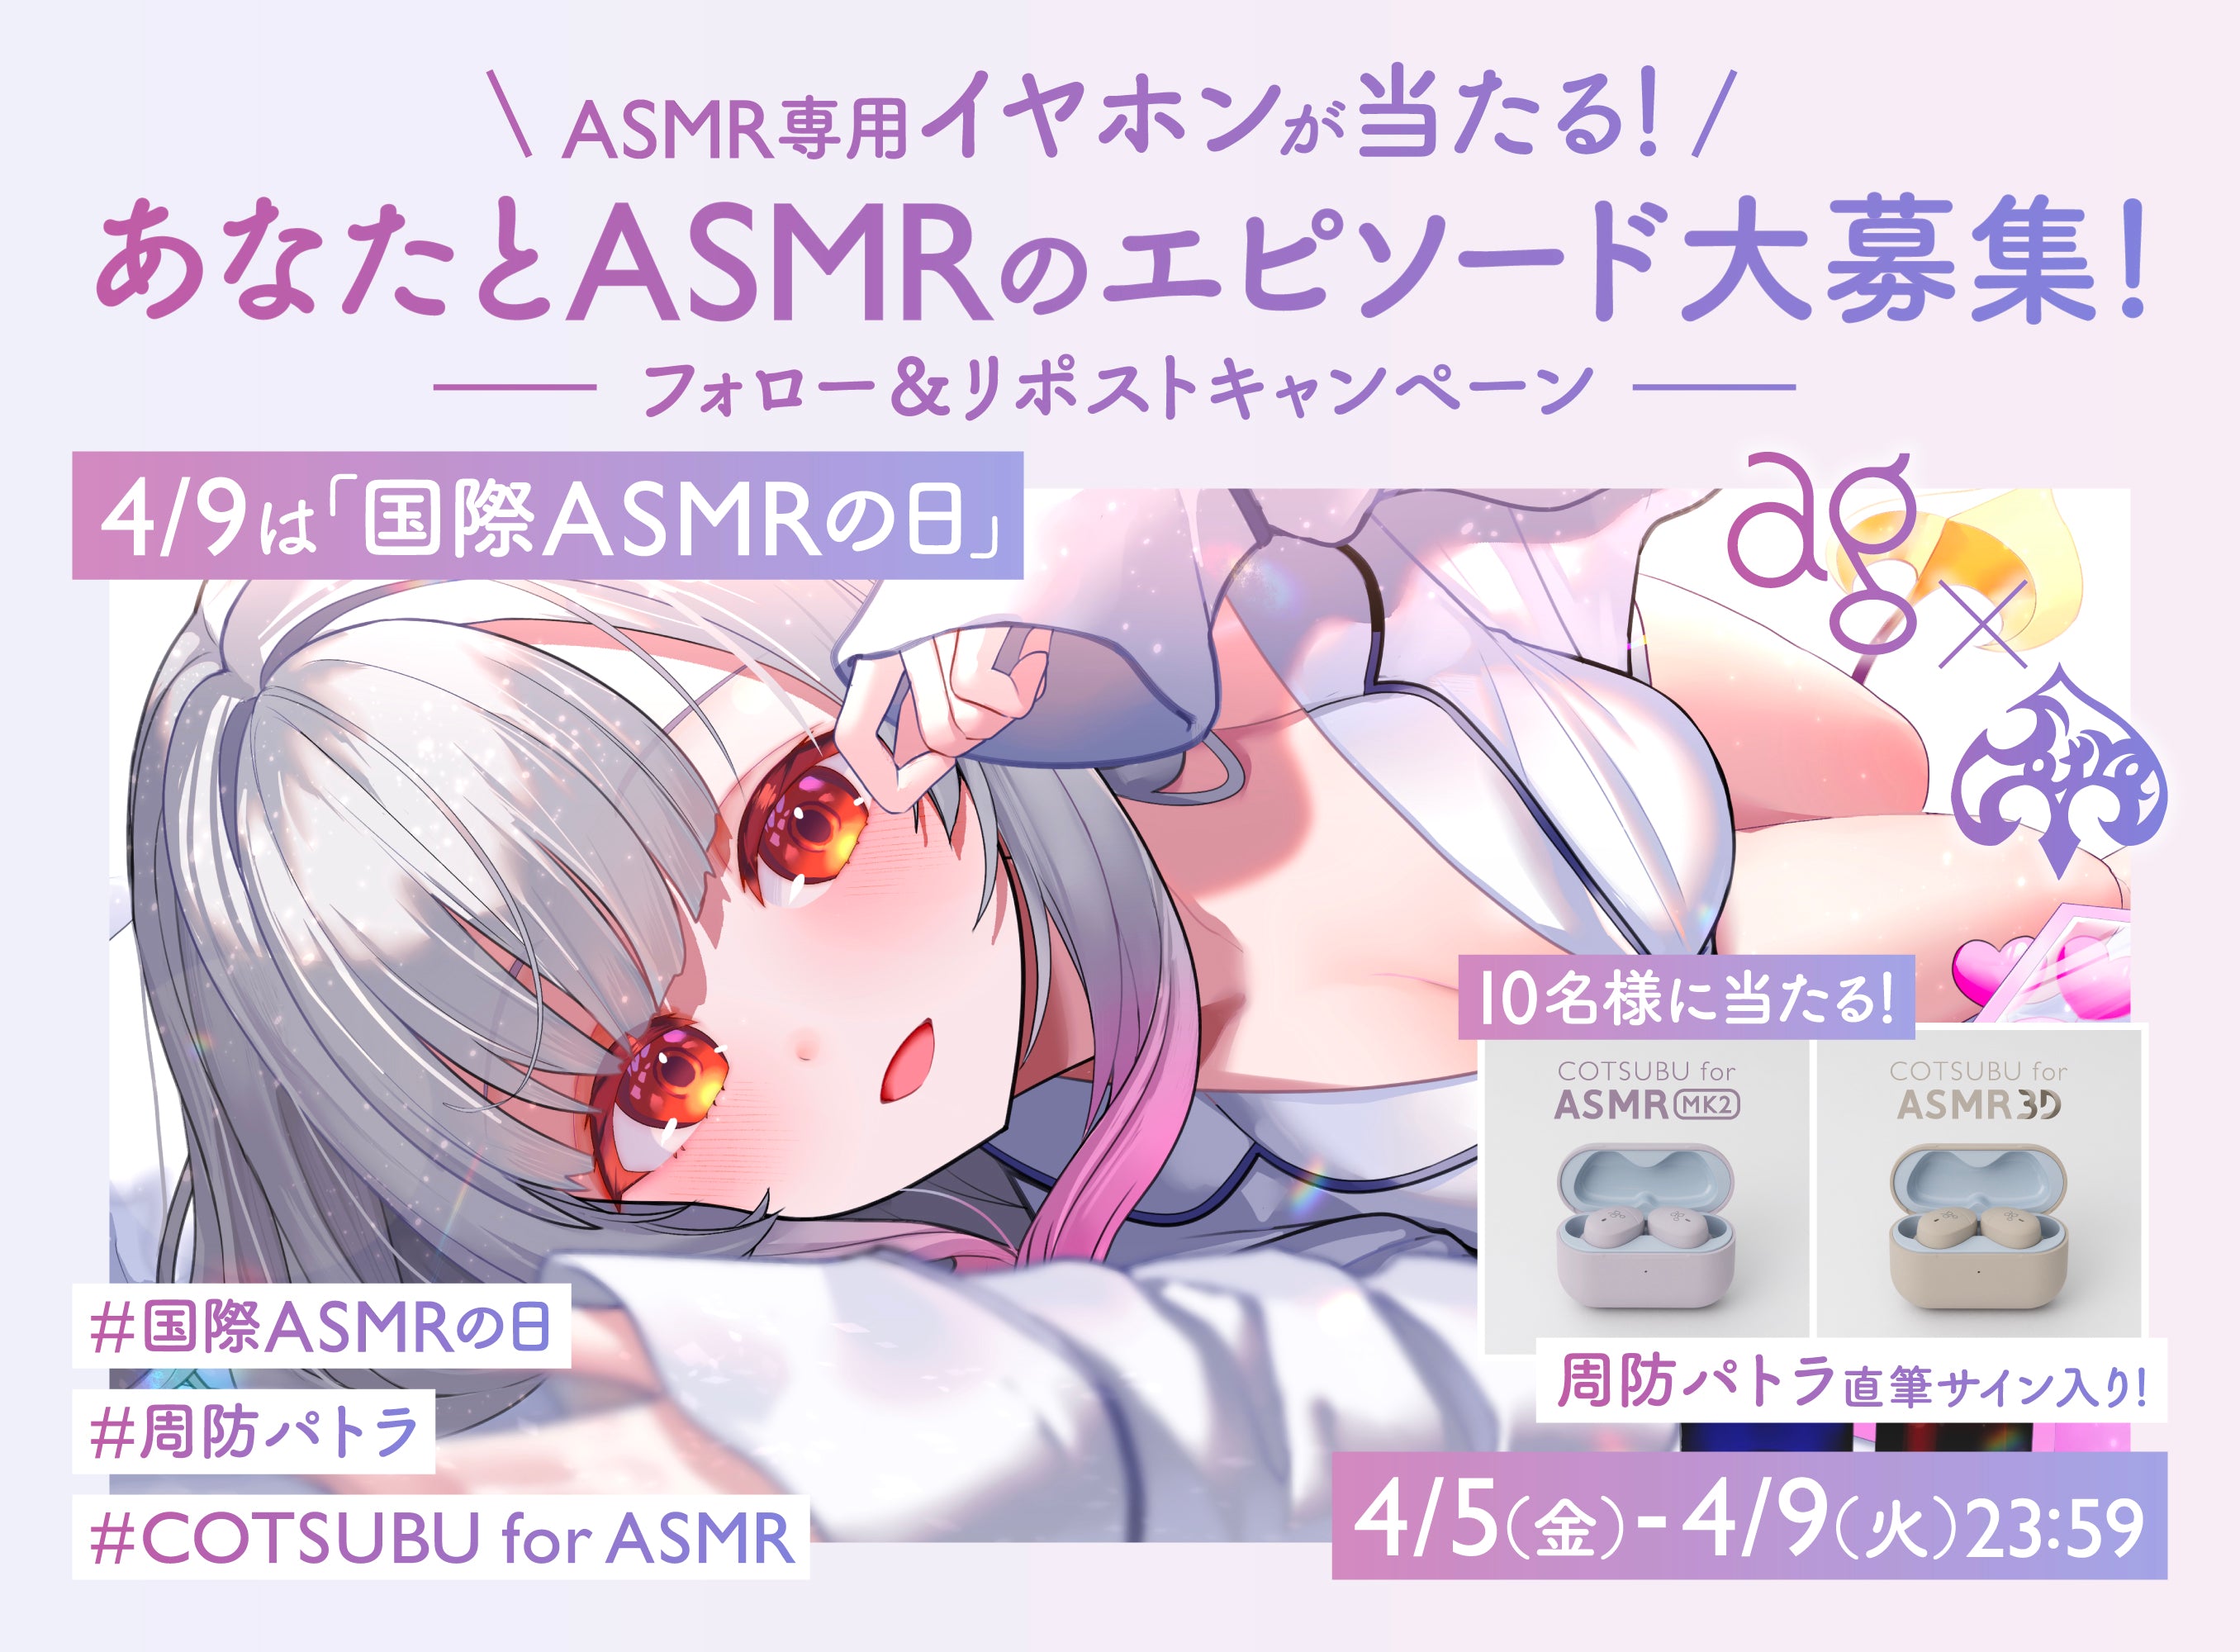 ＼4月9日（火）は「国際ASMRの日」／<br>あなたとASMRのエピソード大募集キャンペーン！<br>最新ASMR専用イヤホンプレゼント！